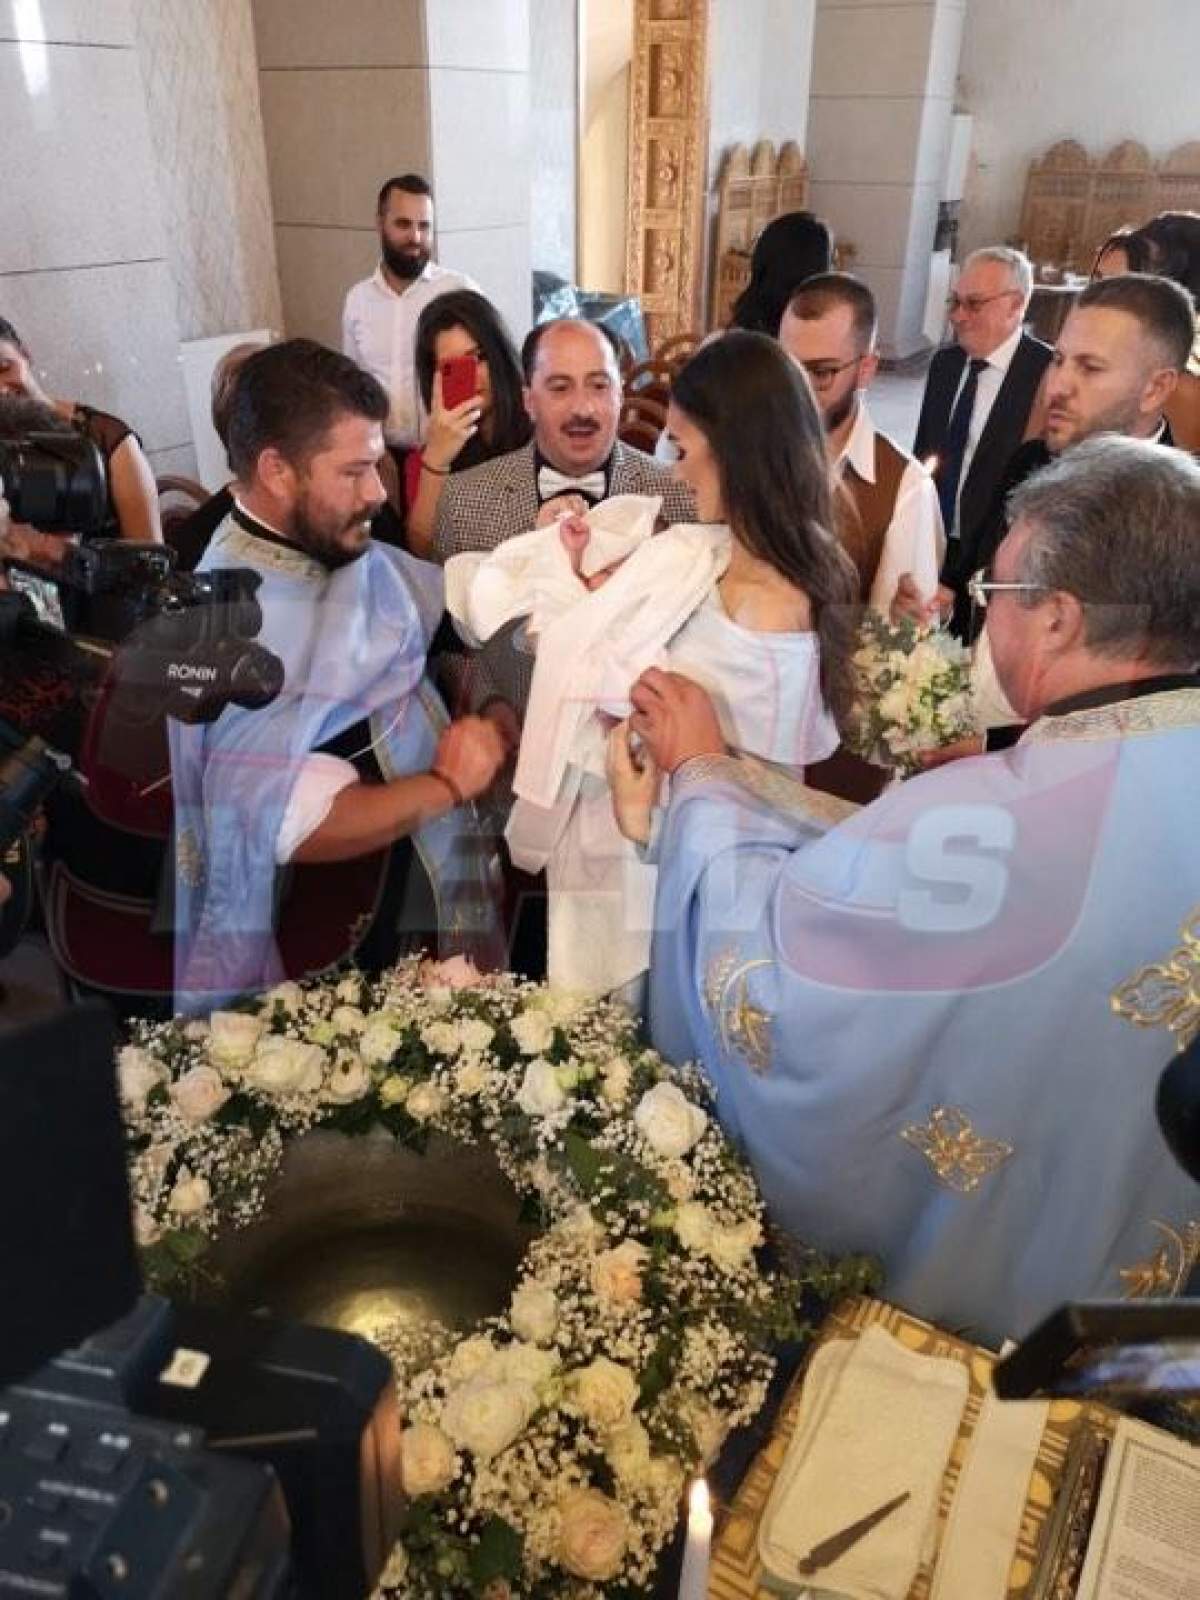 Imagini nemaivăzute de la botezul nepotului lui Romică Ţociu! Evenimentul, ca un festival. FOTO